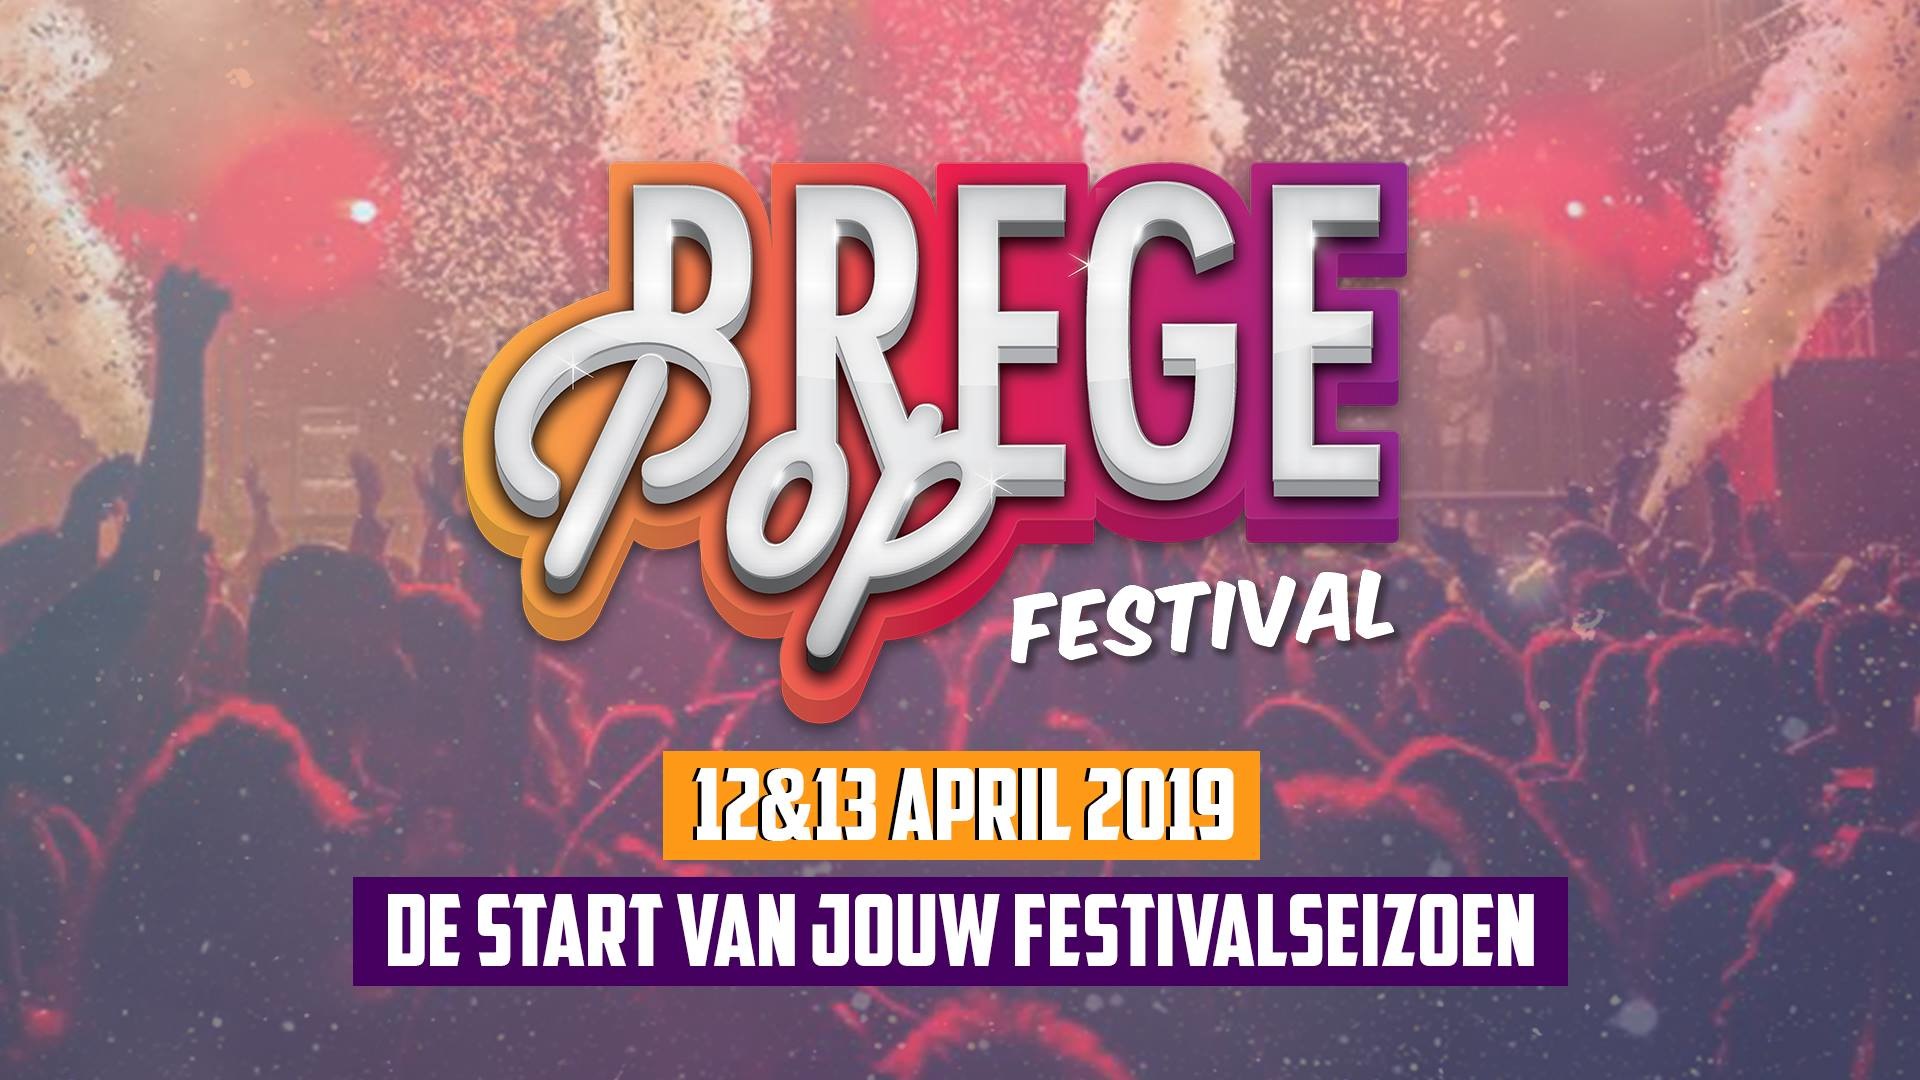 Bregepop Festival 2019 · Scharsterbrug - Tickets, line-up, timetable & info